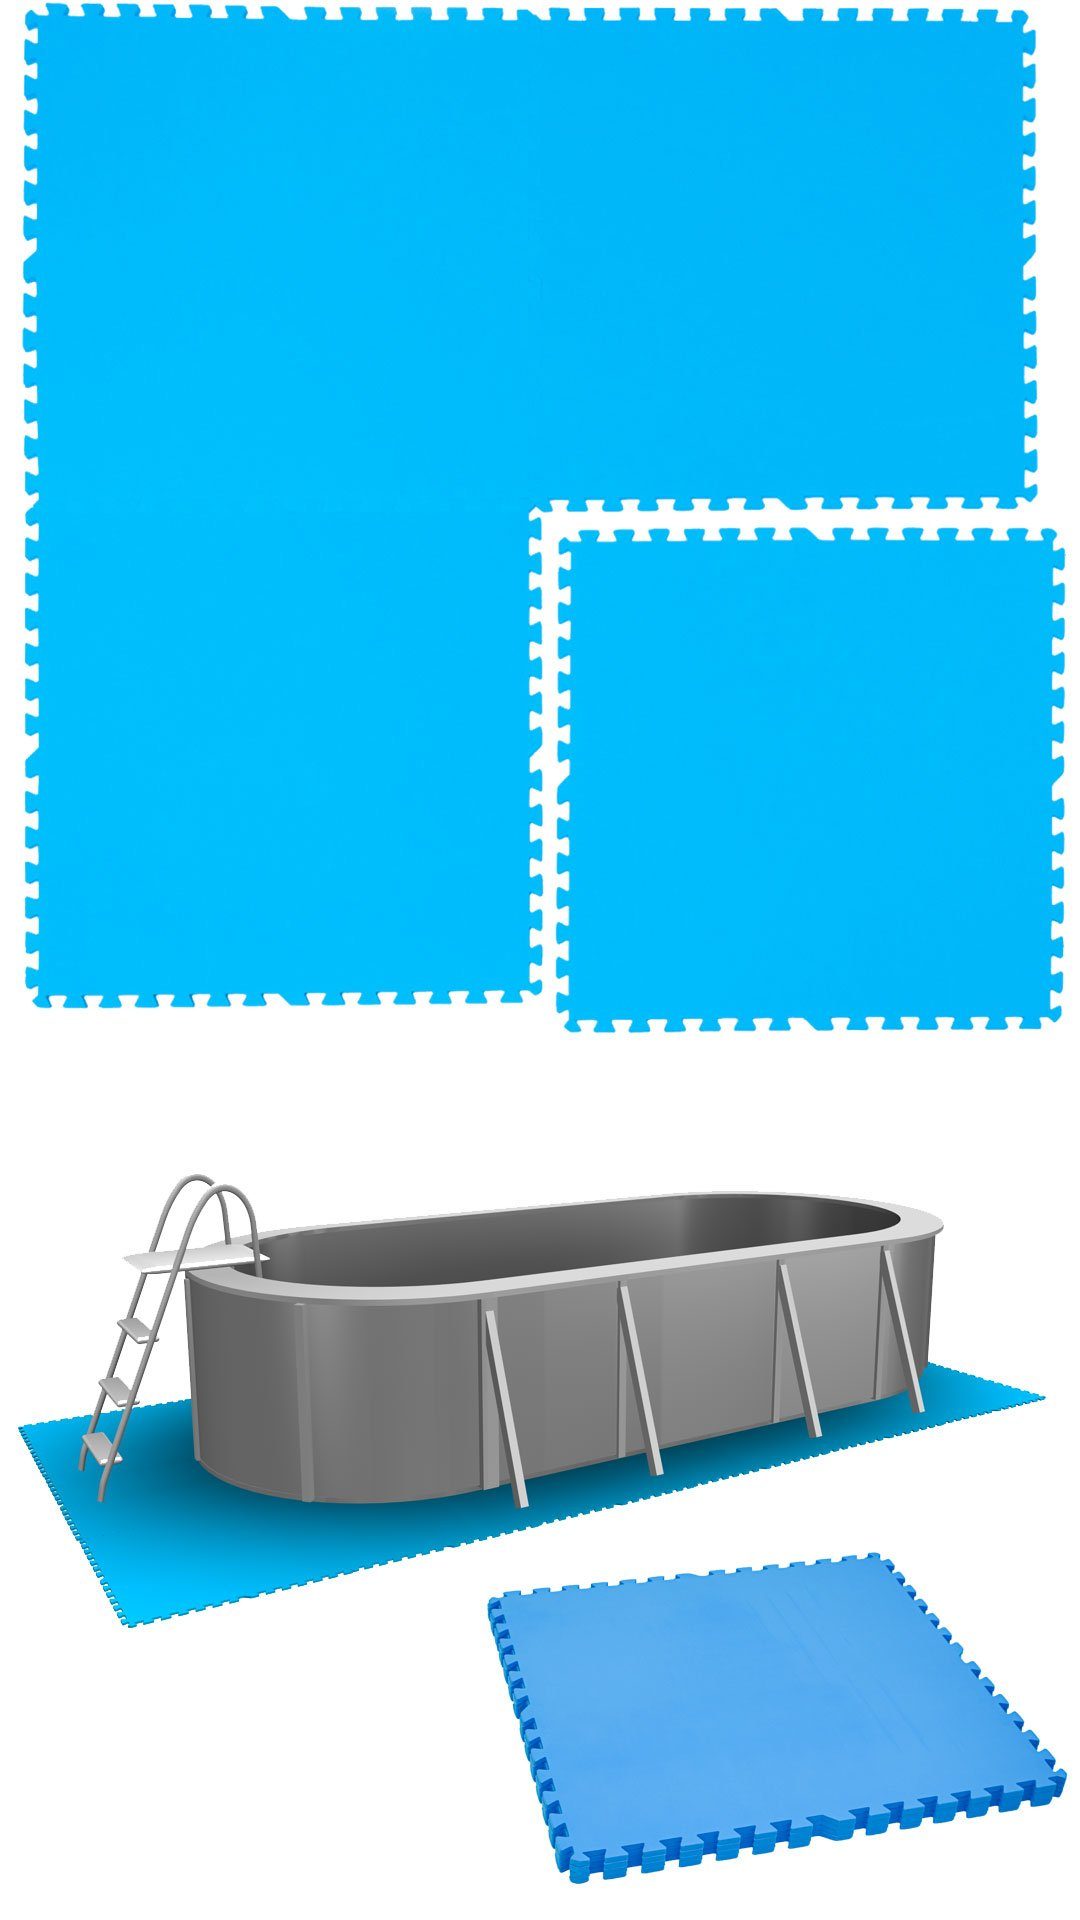 eyepower Bodenmatte Poolmatte 4er Set Bodenmatte 2,6qm Bodenfliesen, erweiterbares Stecksystem Blau | Bodenmatten